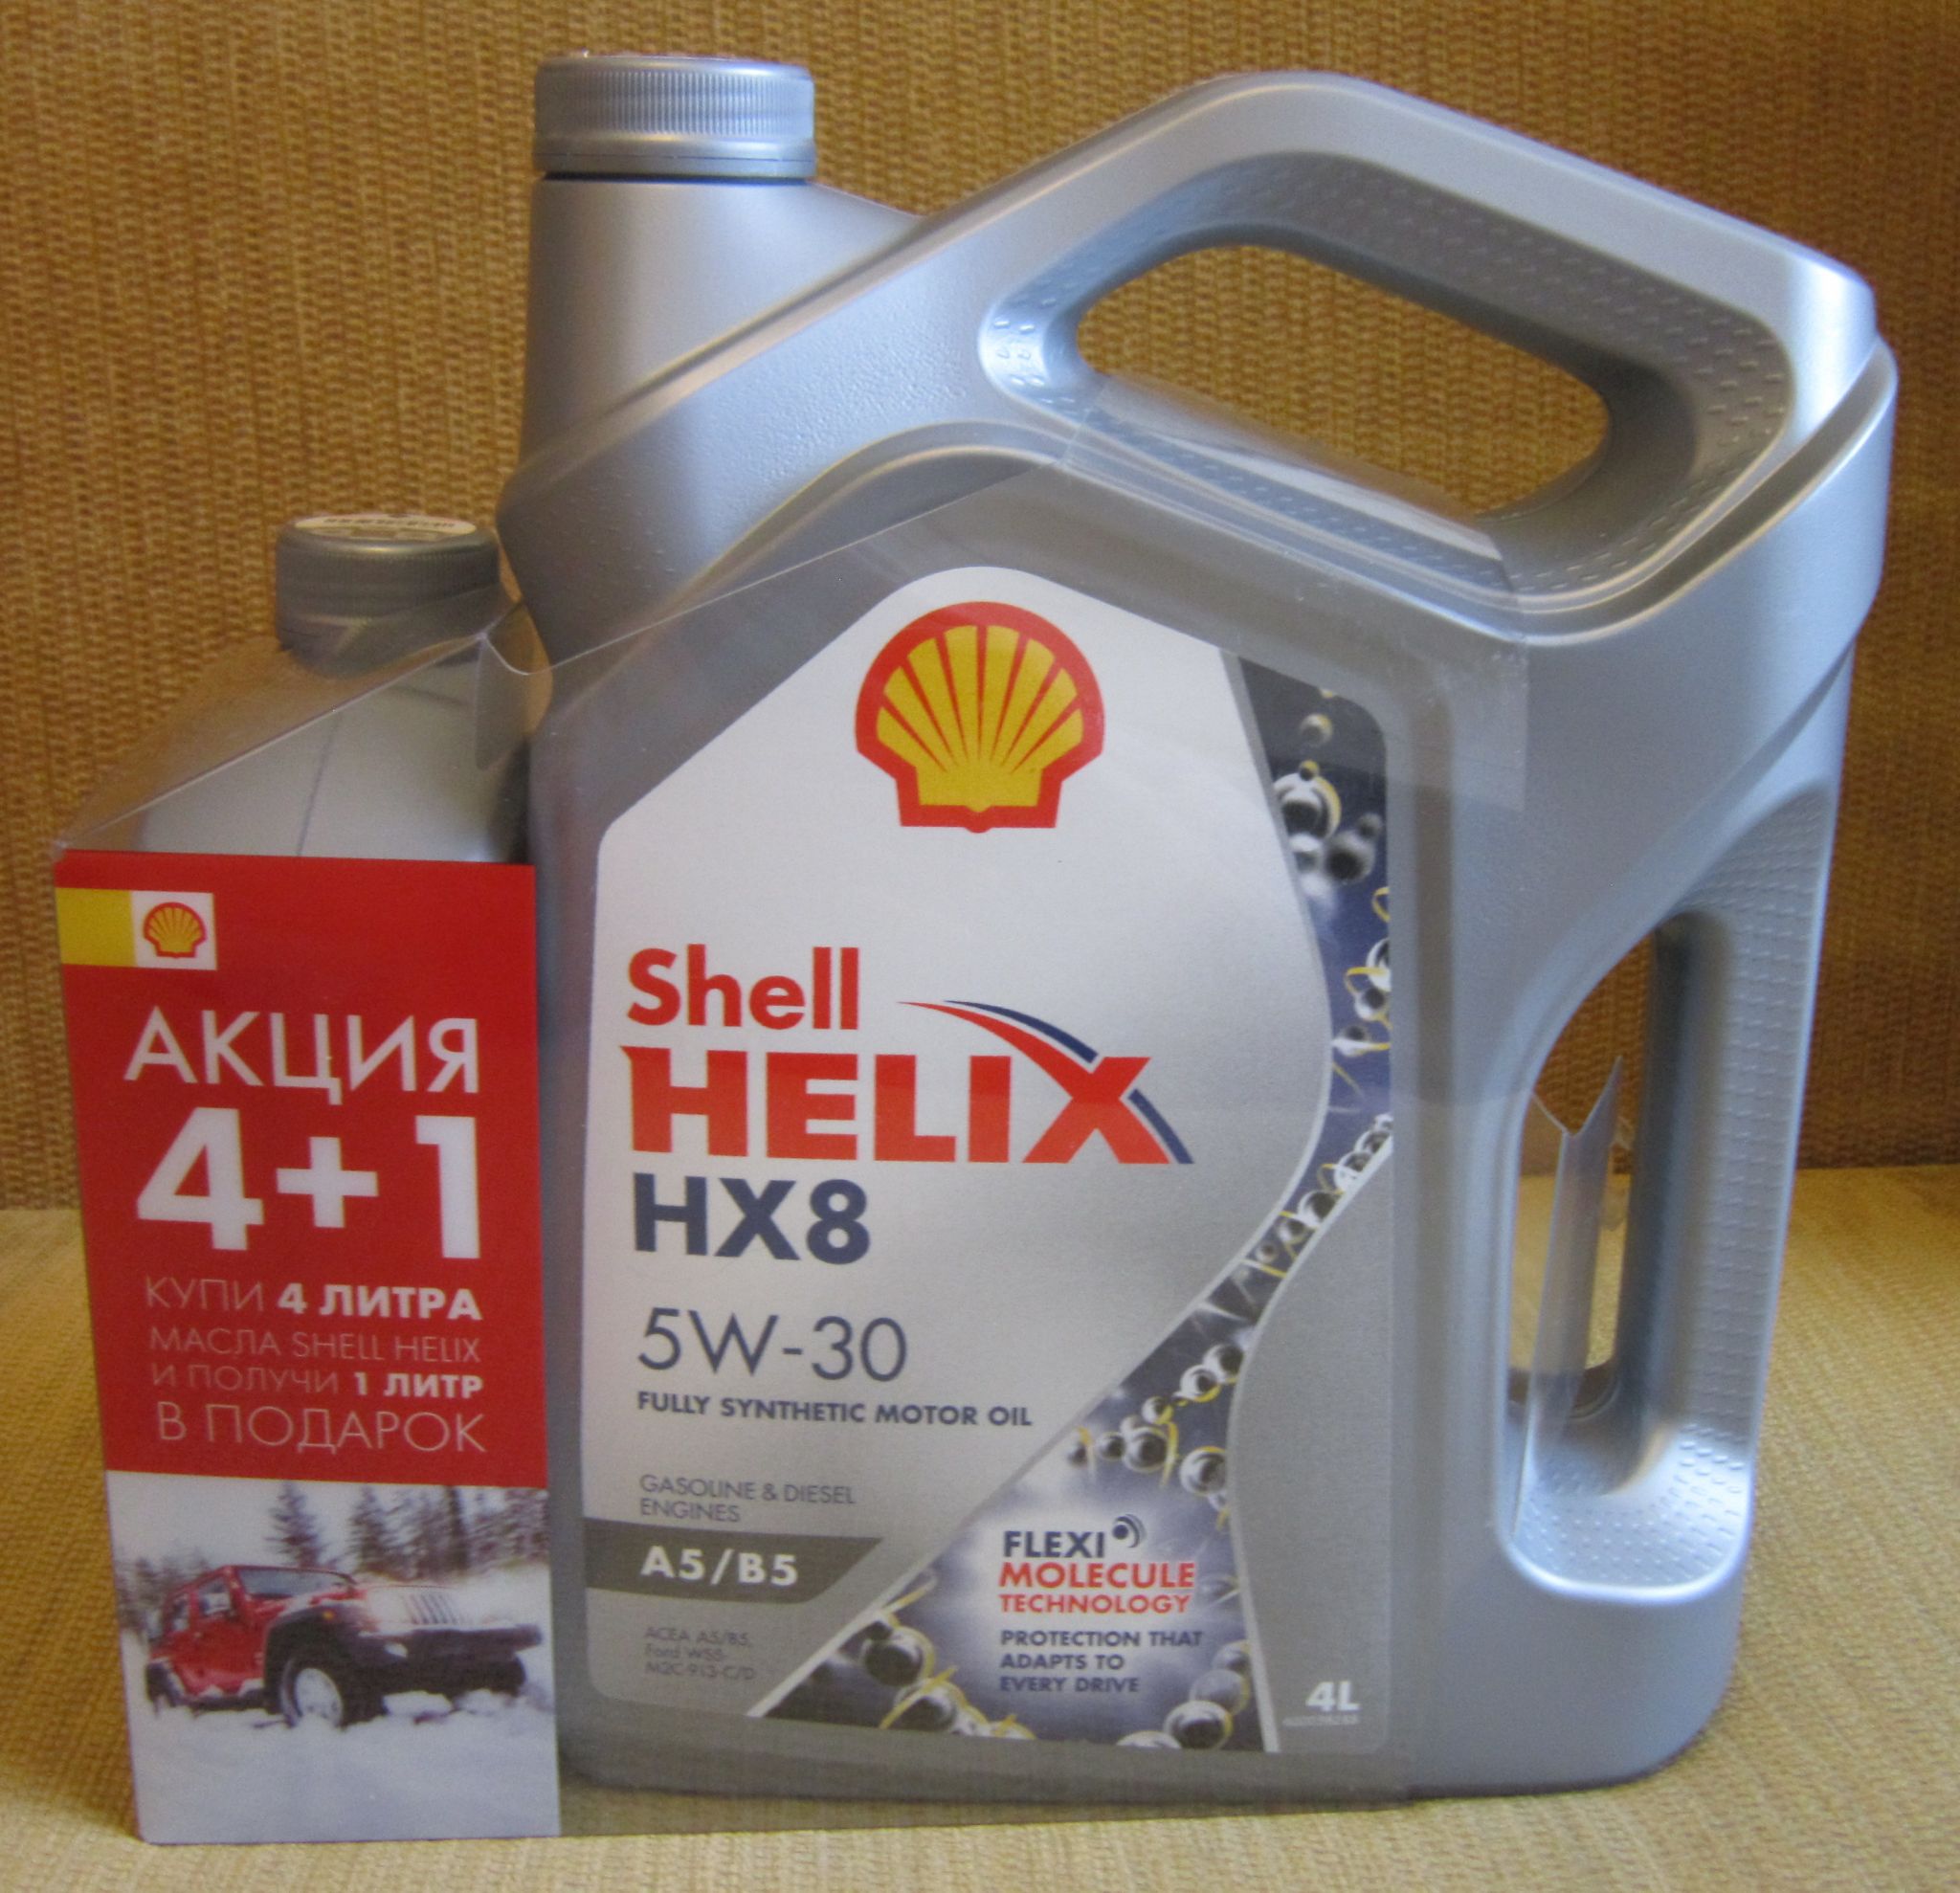 Масла 5w30 a5b5. Shell hx8 5w30. Shell hx8 5w30 a5/b5. Моторное масло синтетическое Shell Helix hx8 a5/b5 5w-30. Моторное масло Shell Helix hx8 a5/b5 5w-30 синтетическое 4 л.